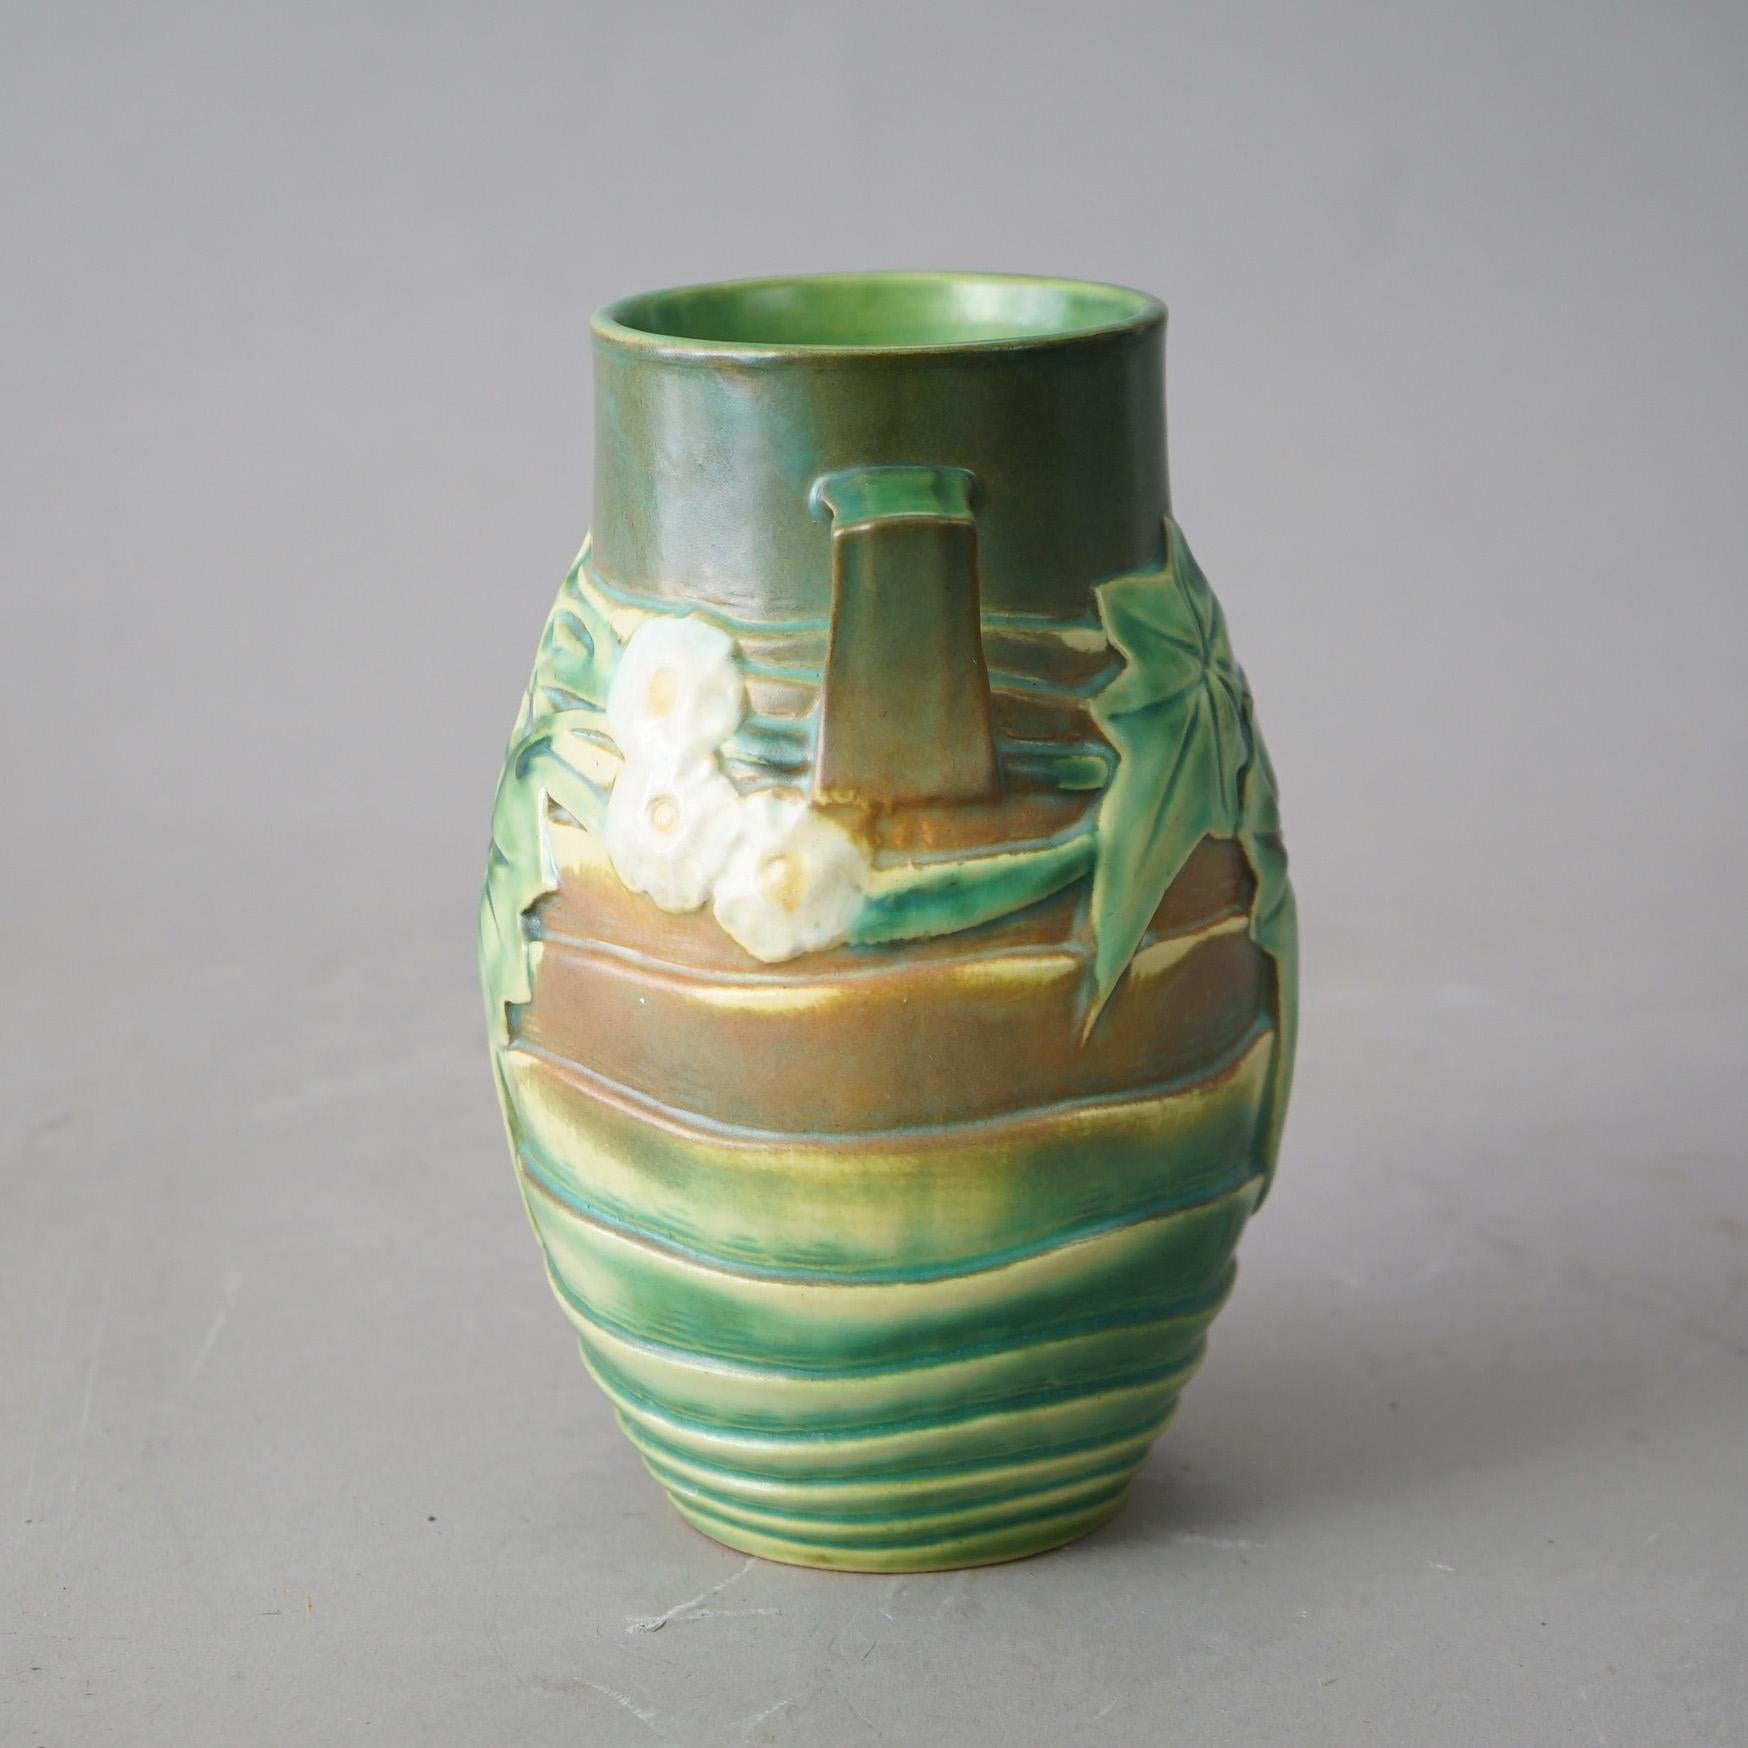 Eine antike Arts and Crafts Vase von Roseville mit grünem Luffa-Muster, Doppelhenkeln und Blumen mit Blättern, um 1930

Maße - 8,25 